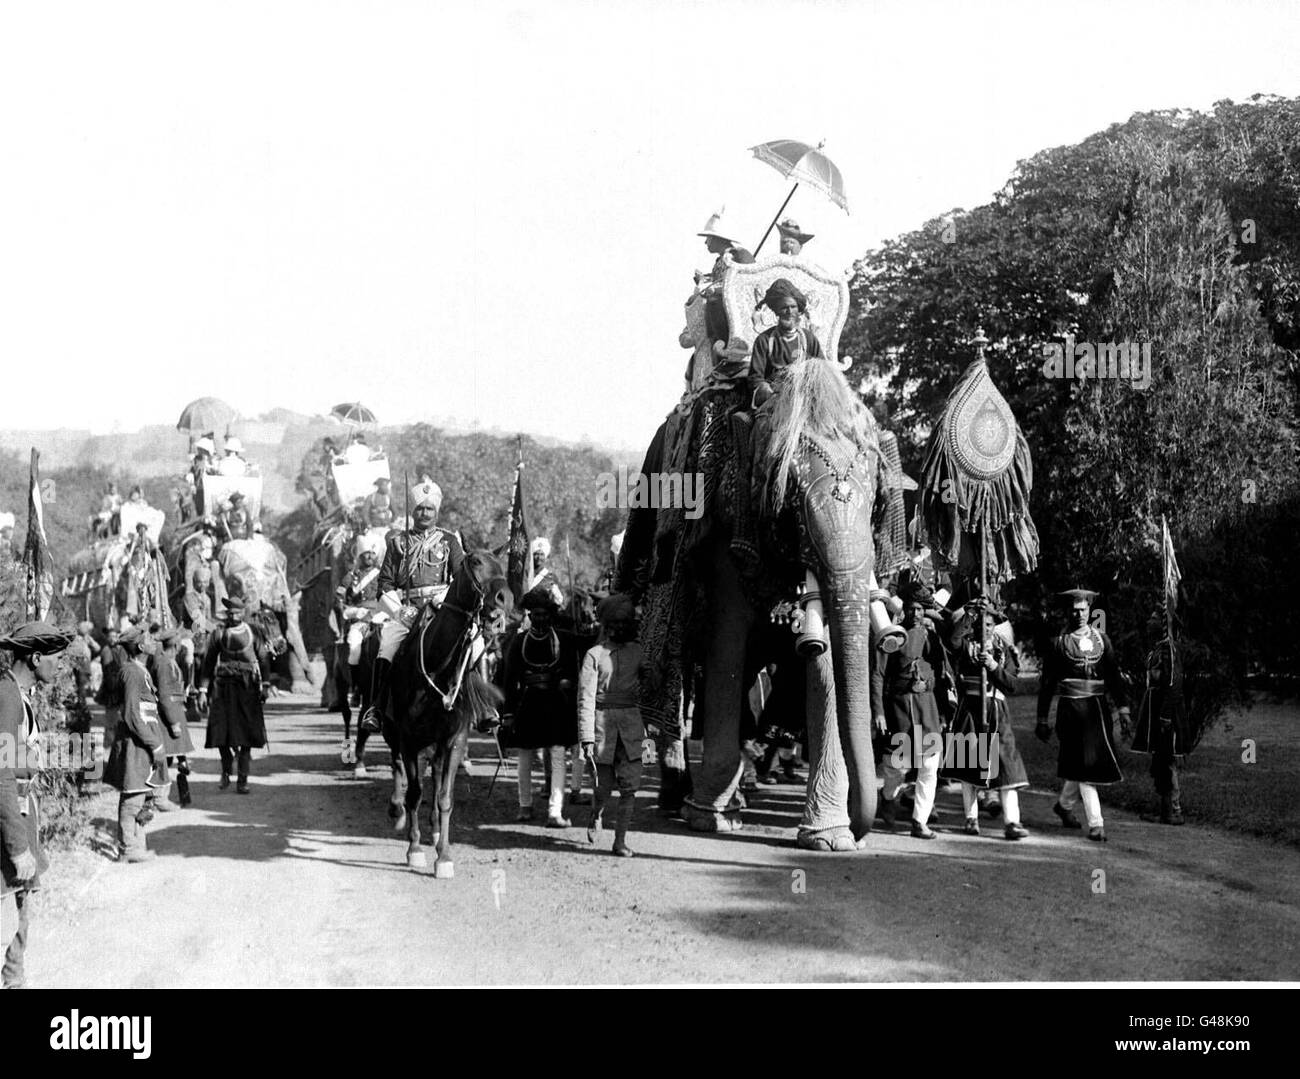 Biblioteca filer ref N133, de fecha 08.2.22 del Príncipe y el Maharajah que conduce la procesión de los Elefantes Estatales. El sol se pone en escenas como esta y al final del Raj británico en la India hace 50 años, en el golpe de la medianoche del 14 de agosto de 1947. Pero las escenas iniciales de júbilo en todo el país se convirtieron rápidamente en horror. Miles de personas murieron cuando estallaron batallas entre musulmanes e hindúes en los dos nuevos países de la India y el Pakistán, creadas a través de la partición del subcontinente religiosamente dividido. Ver historia de PA SOCIAL India. DISPONIBLE SÓLO EN BLANCO Y NEGRO. Foto PA Foto de stock